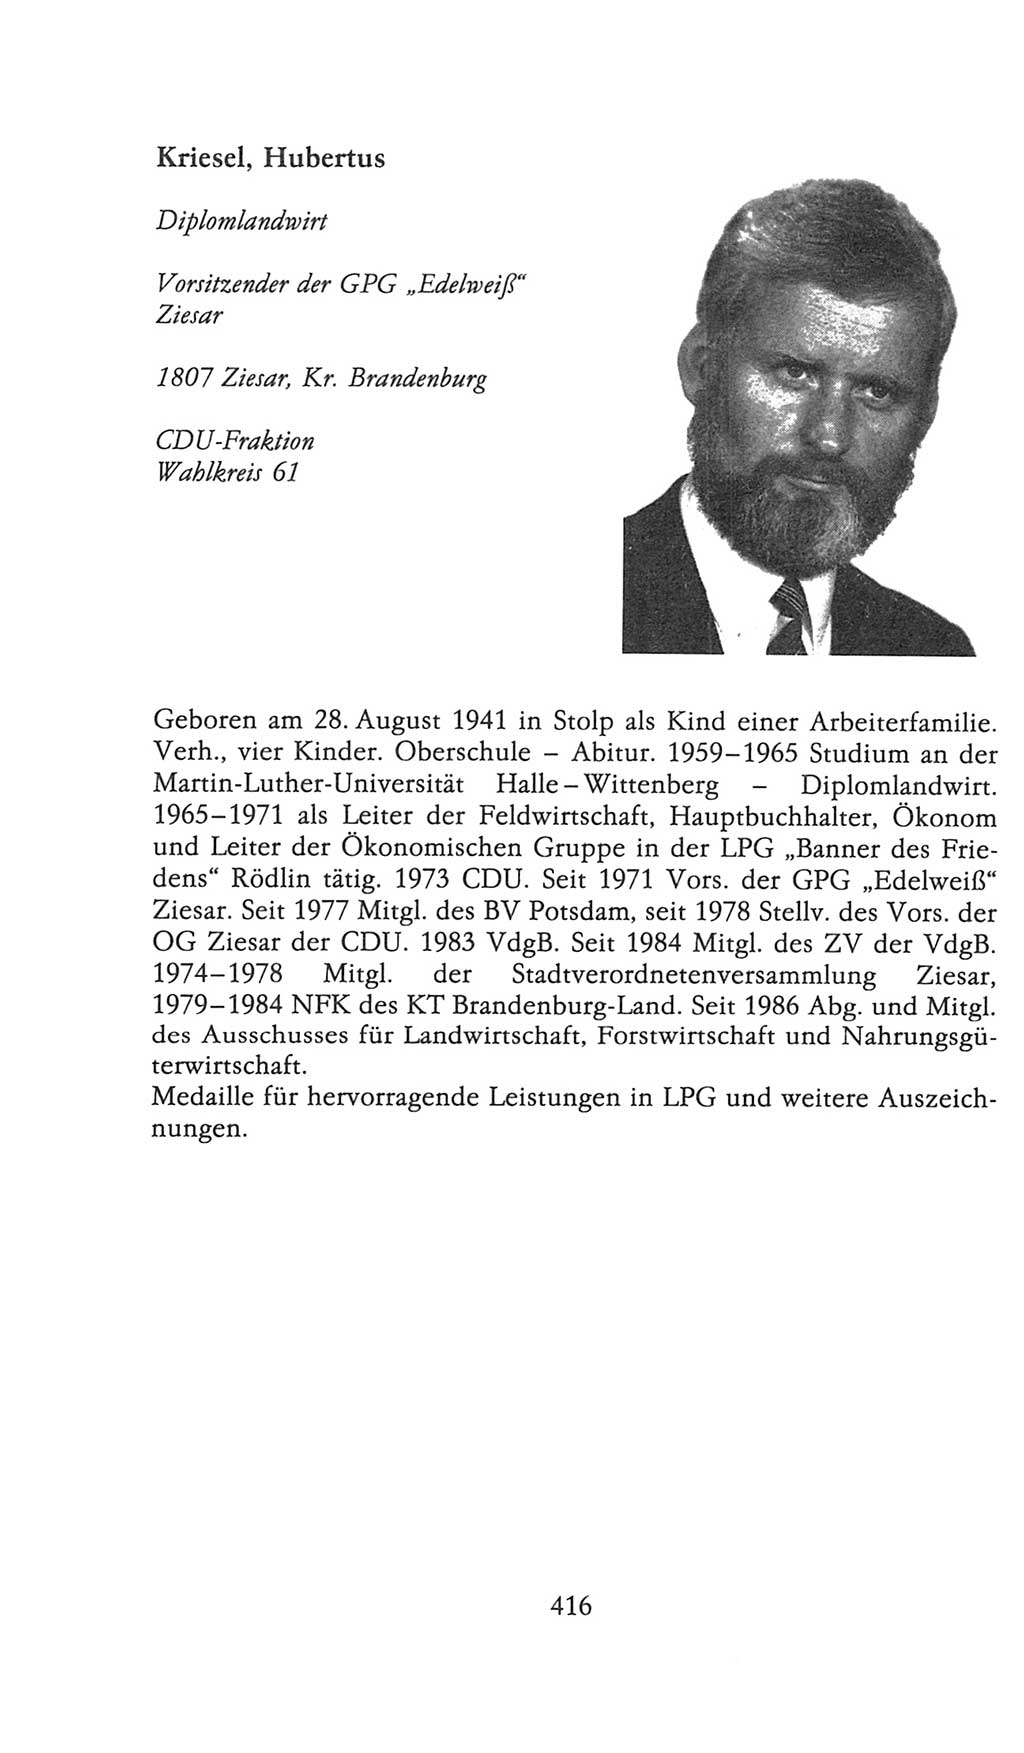 Volkskammer (VK) der Deutschen Demokratischen Republik (DDR), 9. Wahlperiode 1986-1990, Seite 416 (VK. DDR 9. WP. 1986-1990, S. 416)